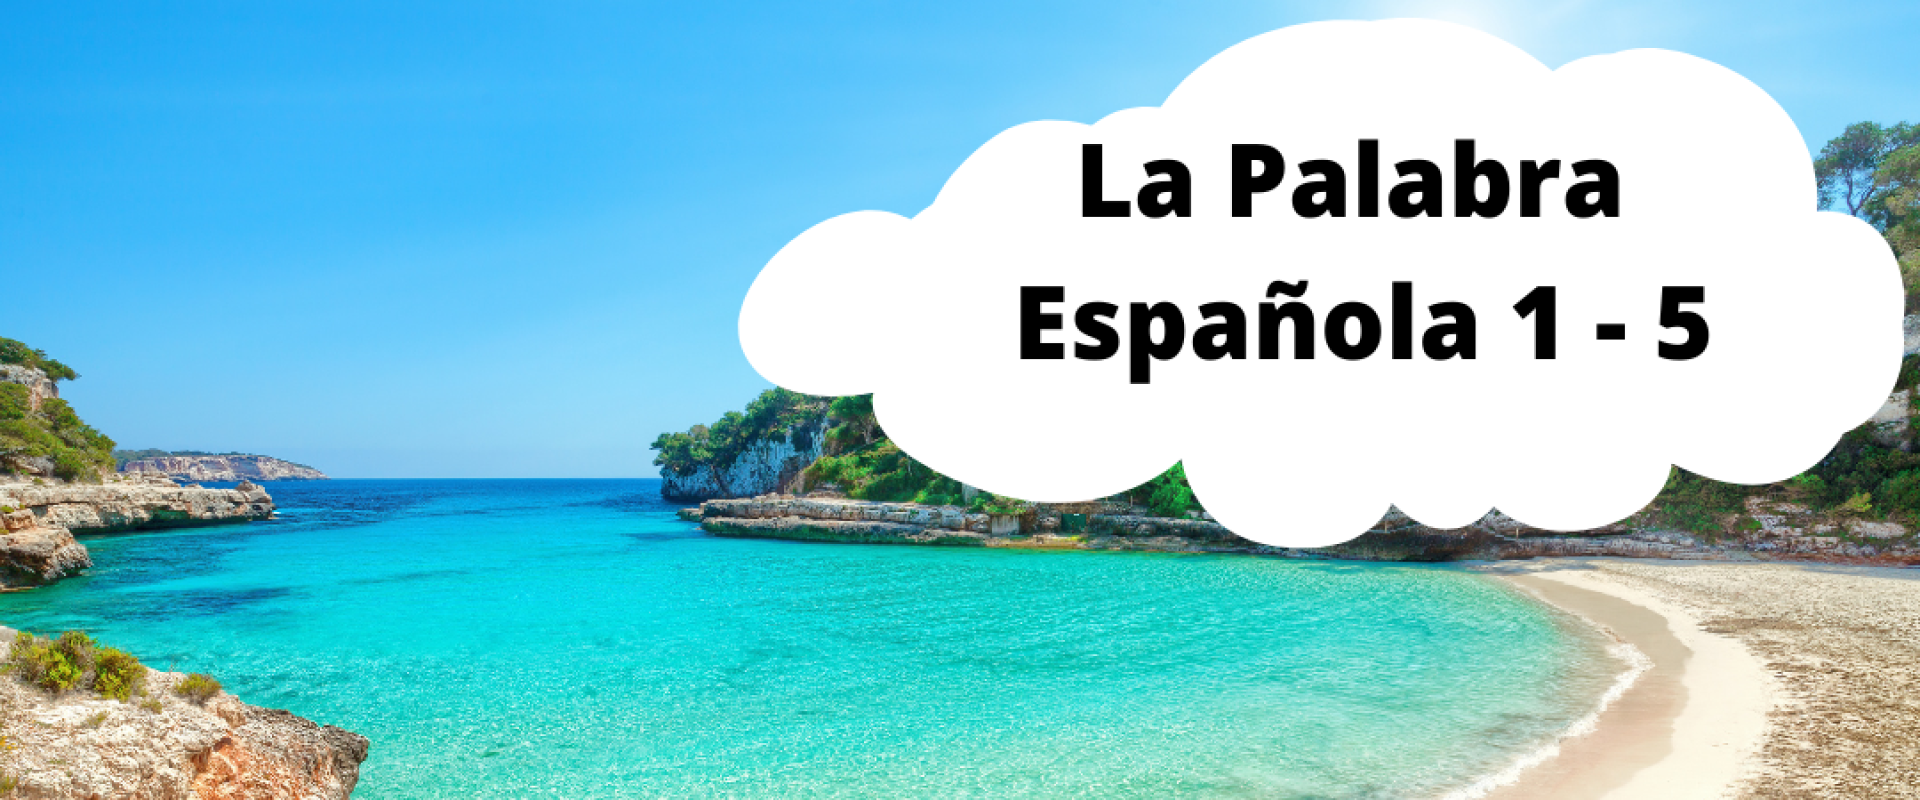 La Palabra Española para ti - Het Spaanse woord voor jou